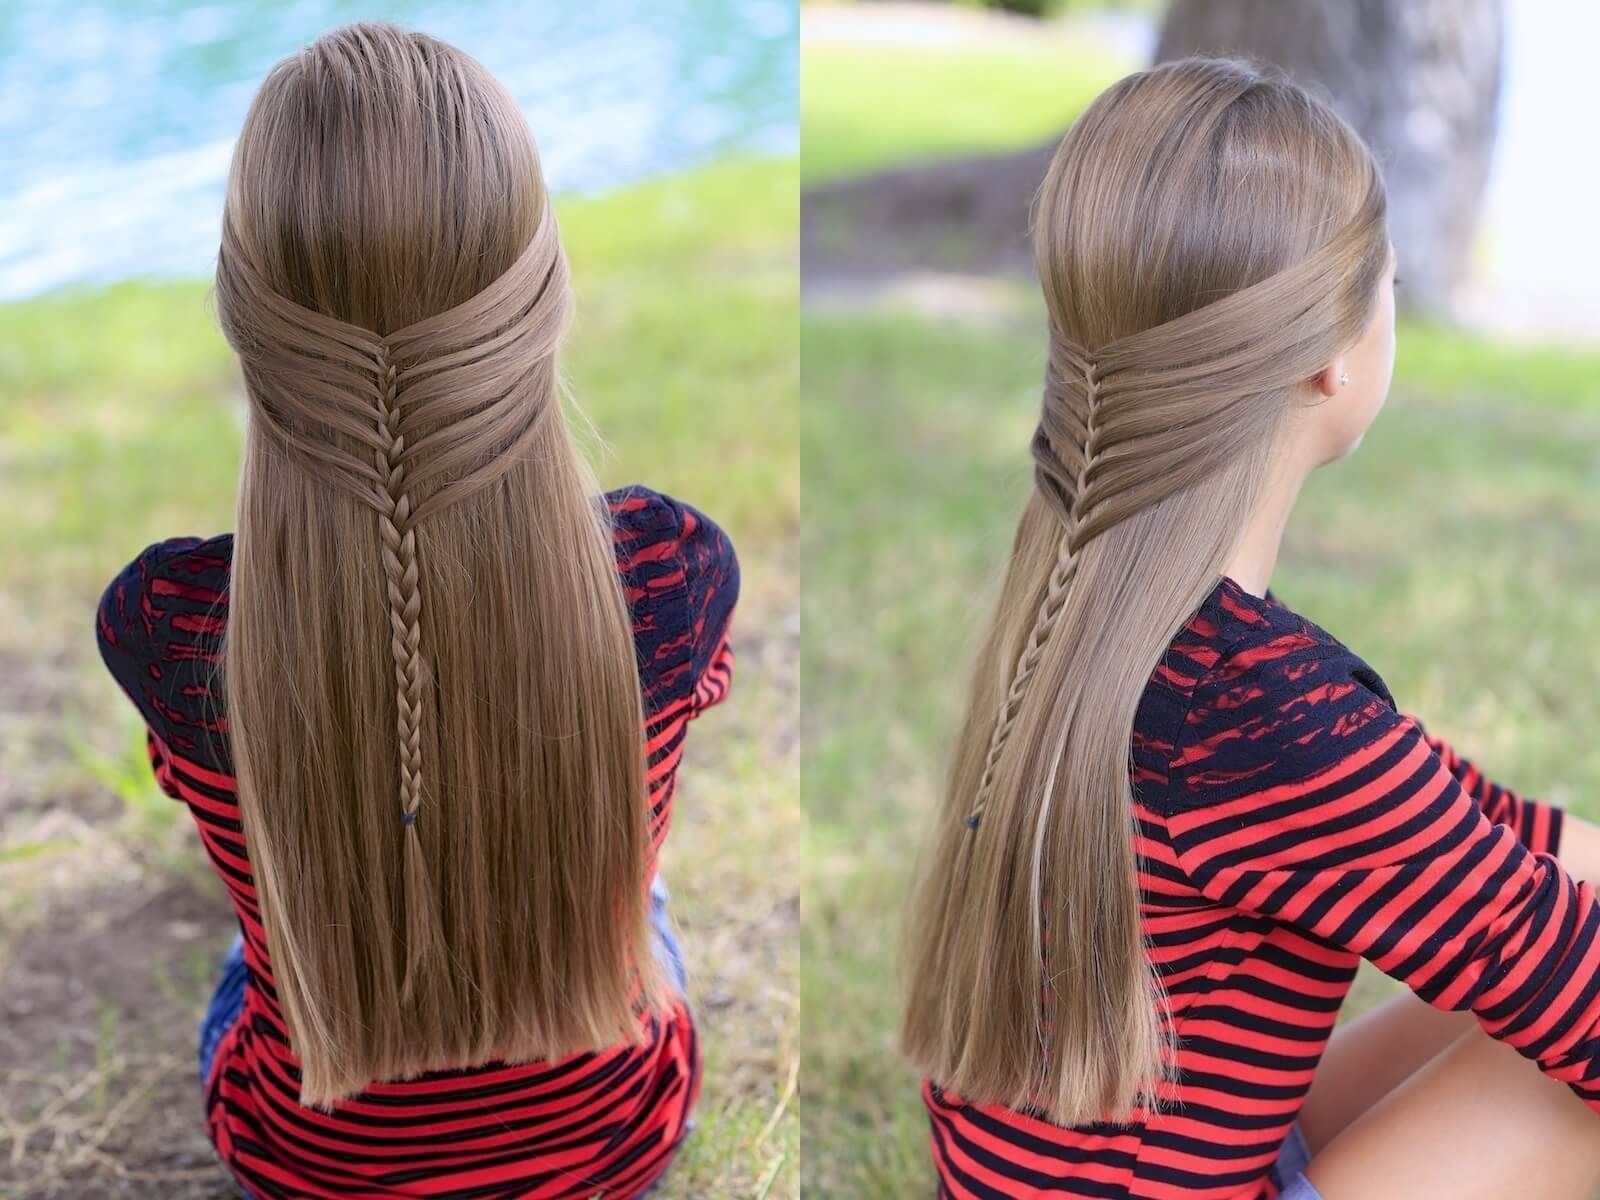 Прическа в школу на длинные волосы быстро. Причёски для девочек на длинные волосы. Красивые причёски для девочек на длинные волосы. Причёски для девочек на длинные волосы в школу. Несложные прически на длинные волосы для девочек.